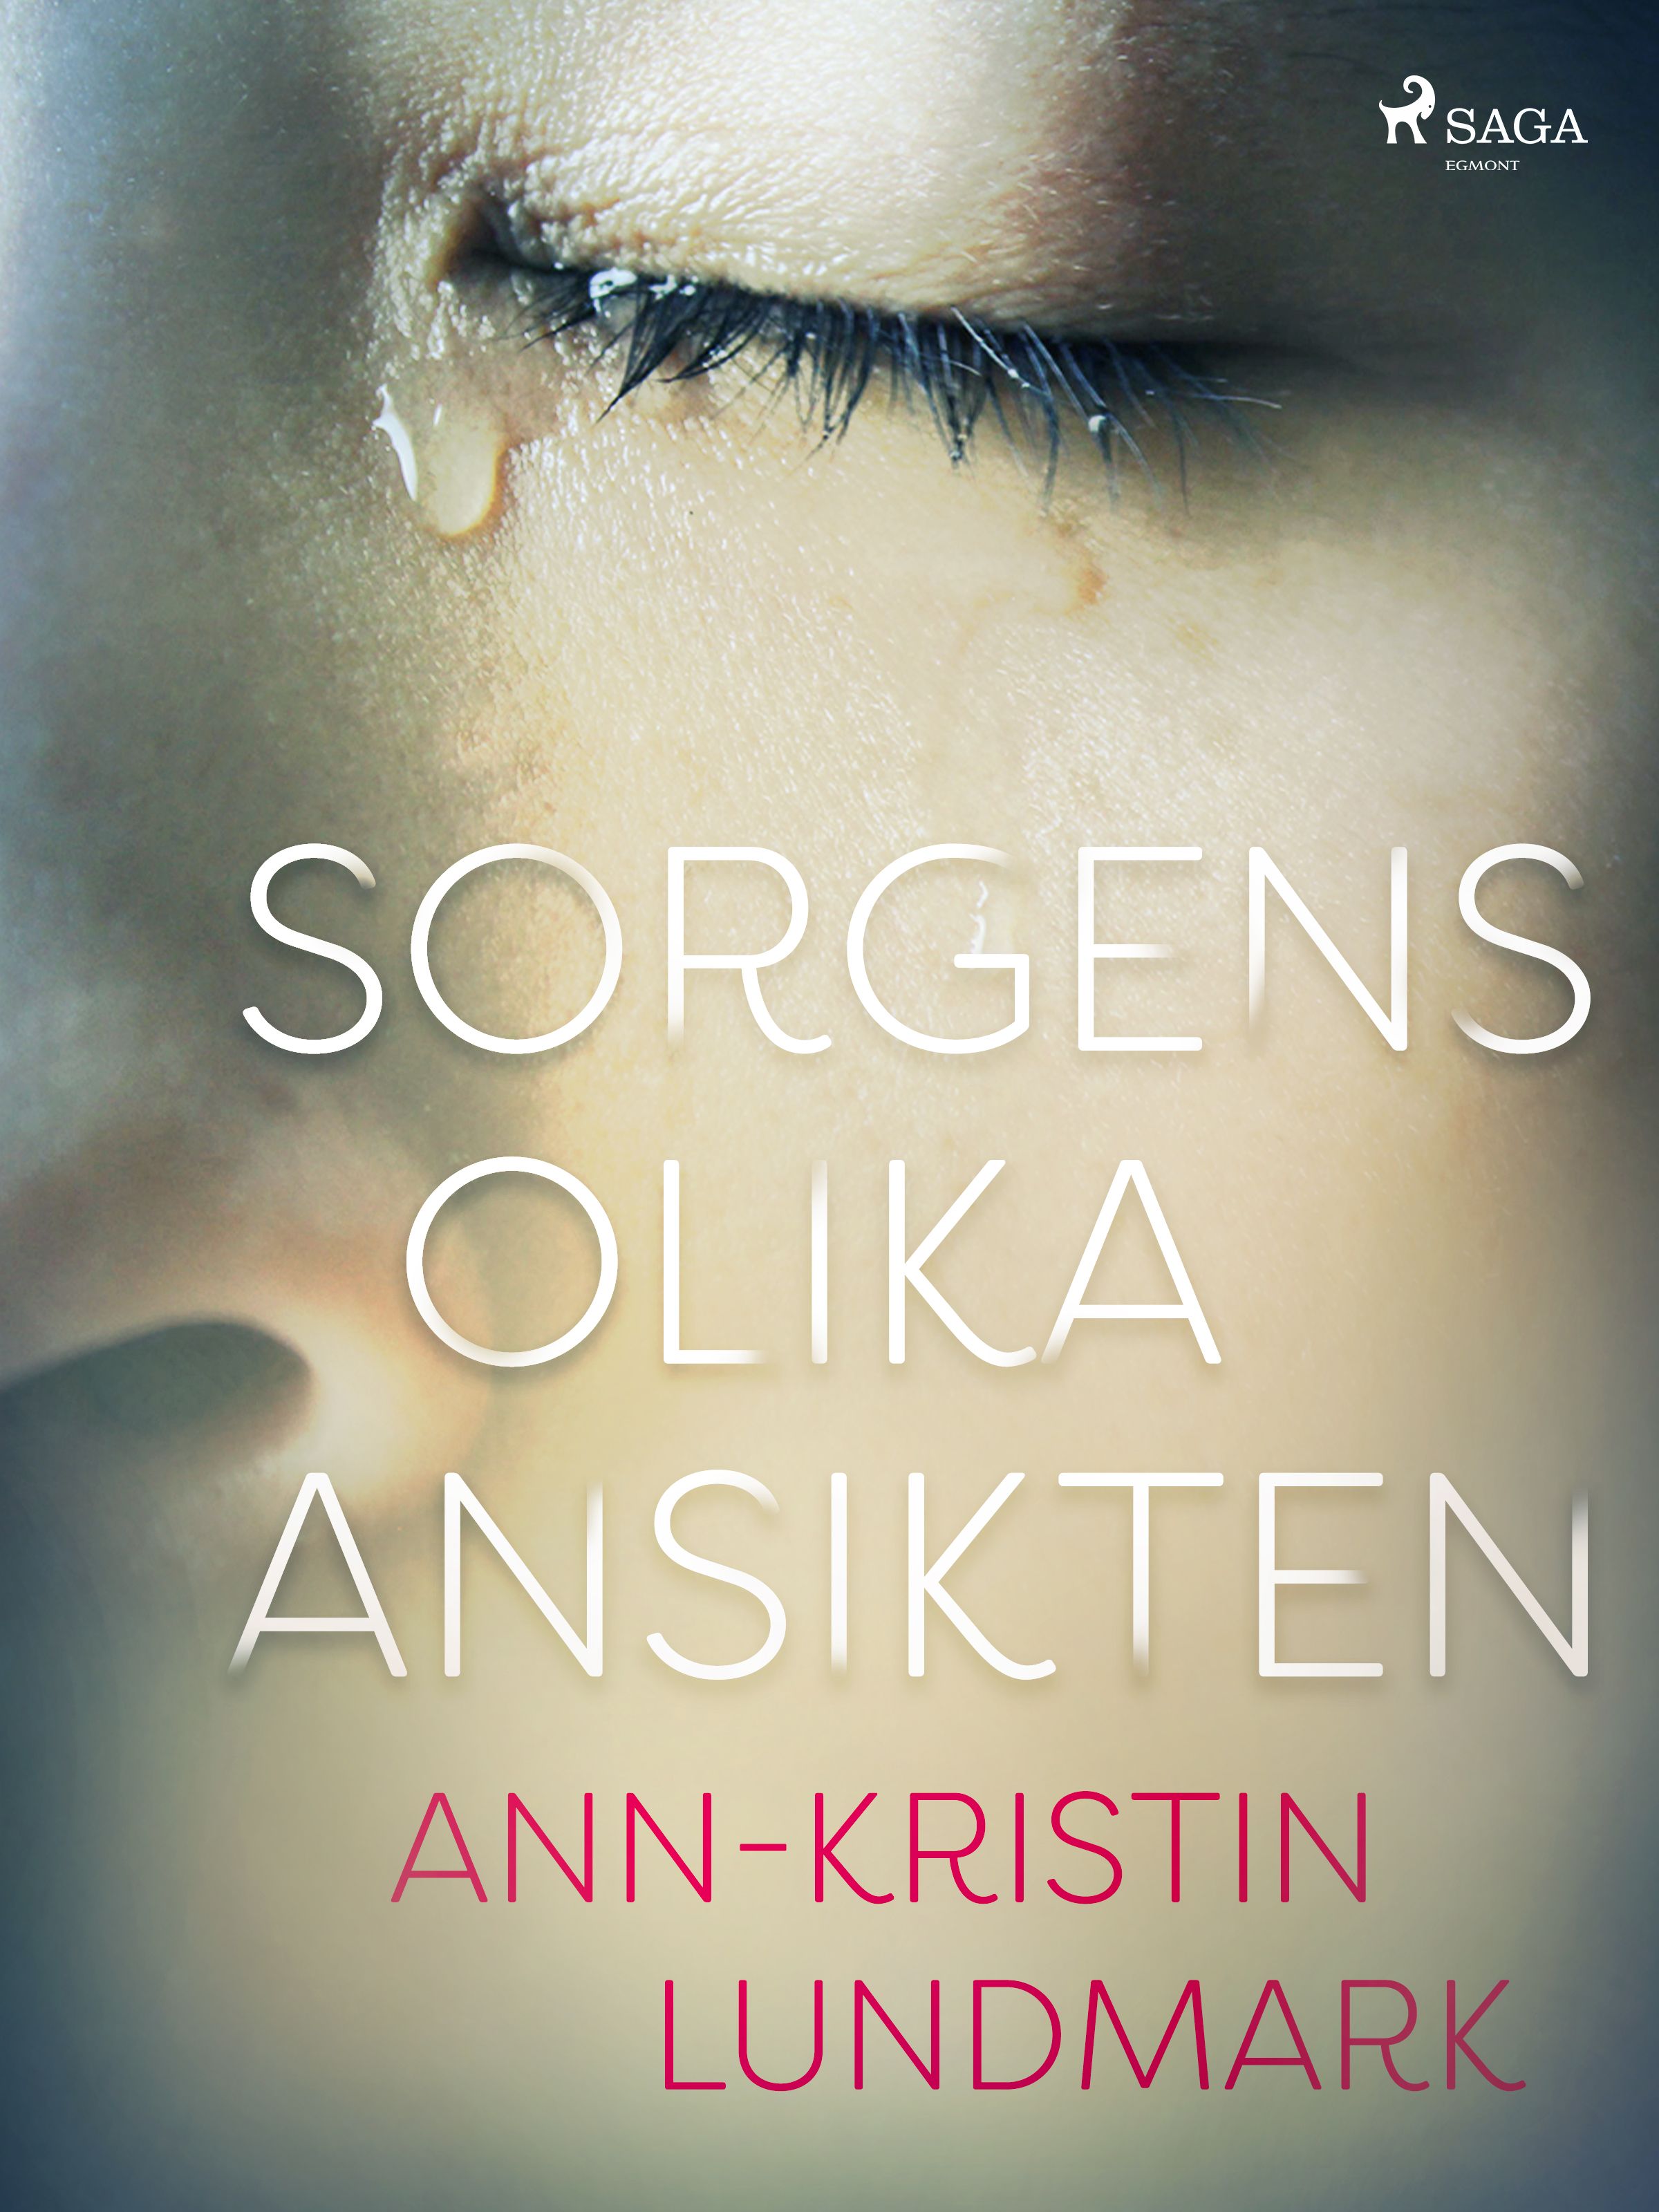 Sorgens olika ansikten, e-bok av Ann-Kristin Lundmark